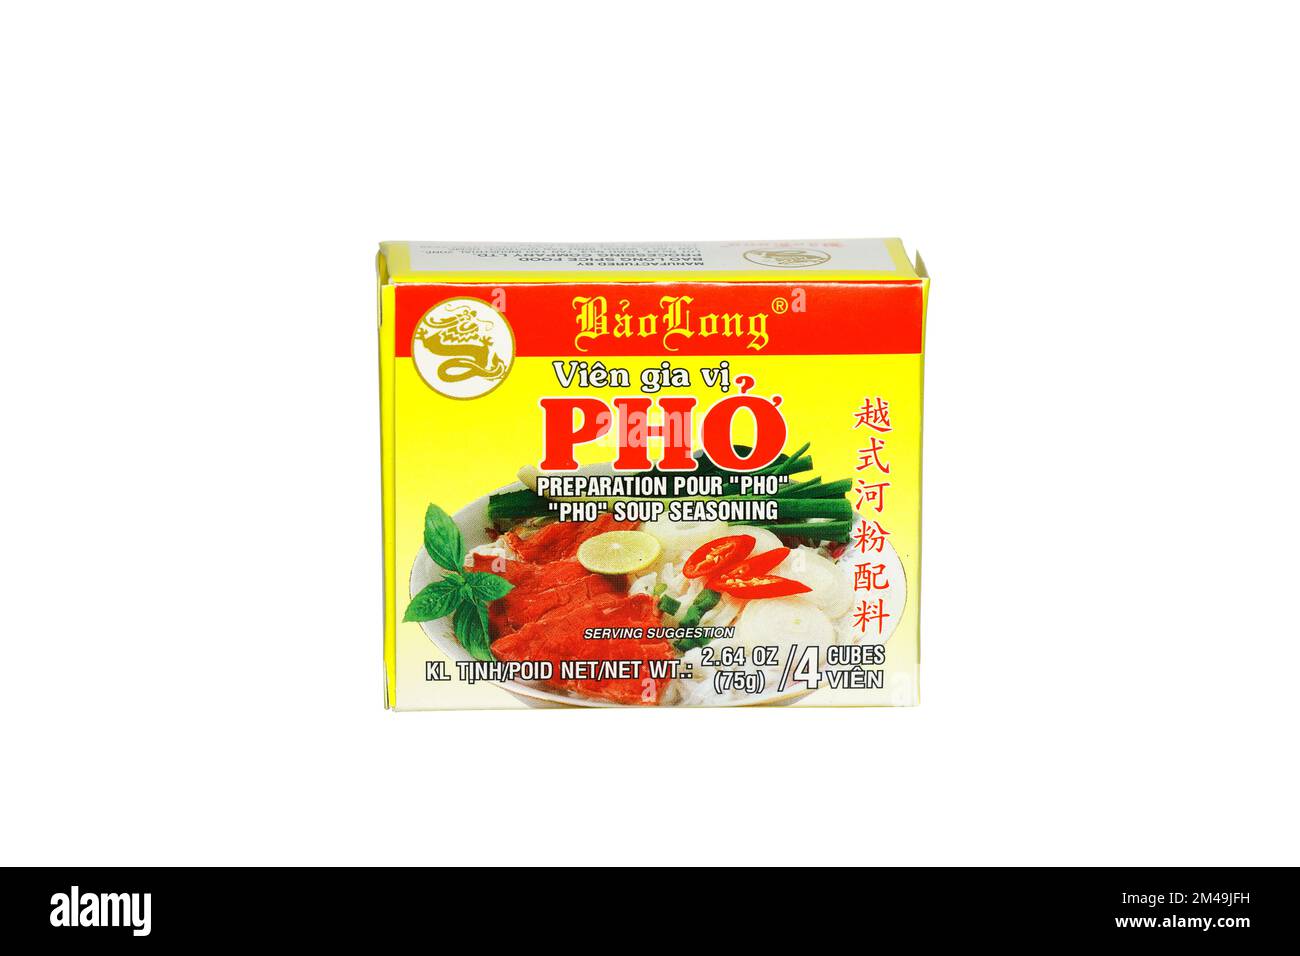 Eine Schachtel Bao Long Pho Suppe Würfelwürfel, isoliert auf weißem Hintergrund. Ausschnittbild zur Veranschaulichung und redaktionellen Verwendung. Stockfoto